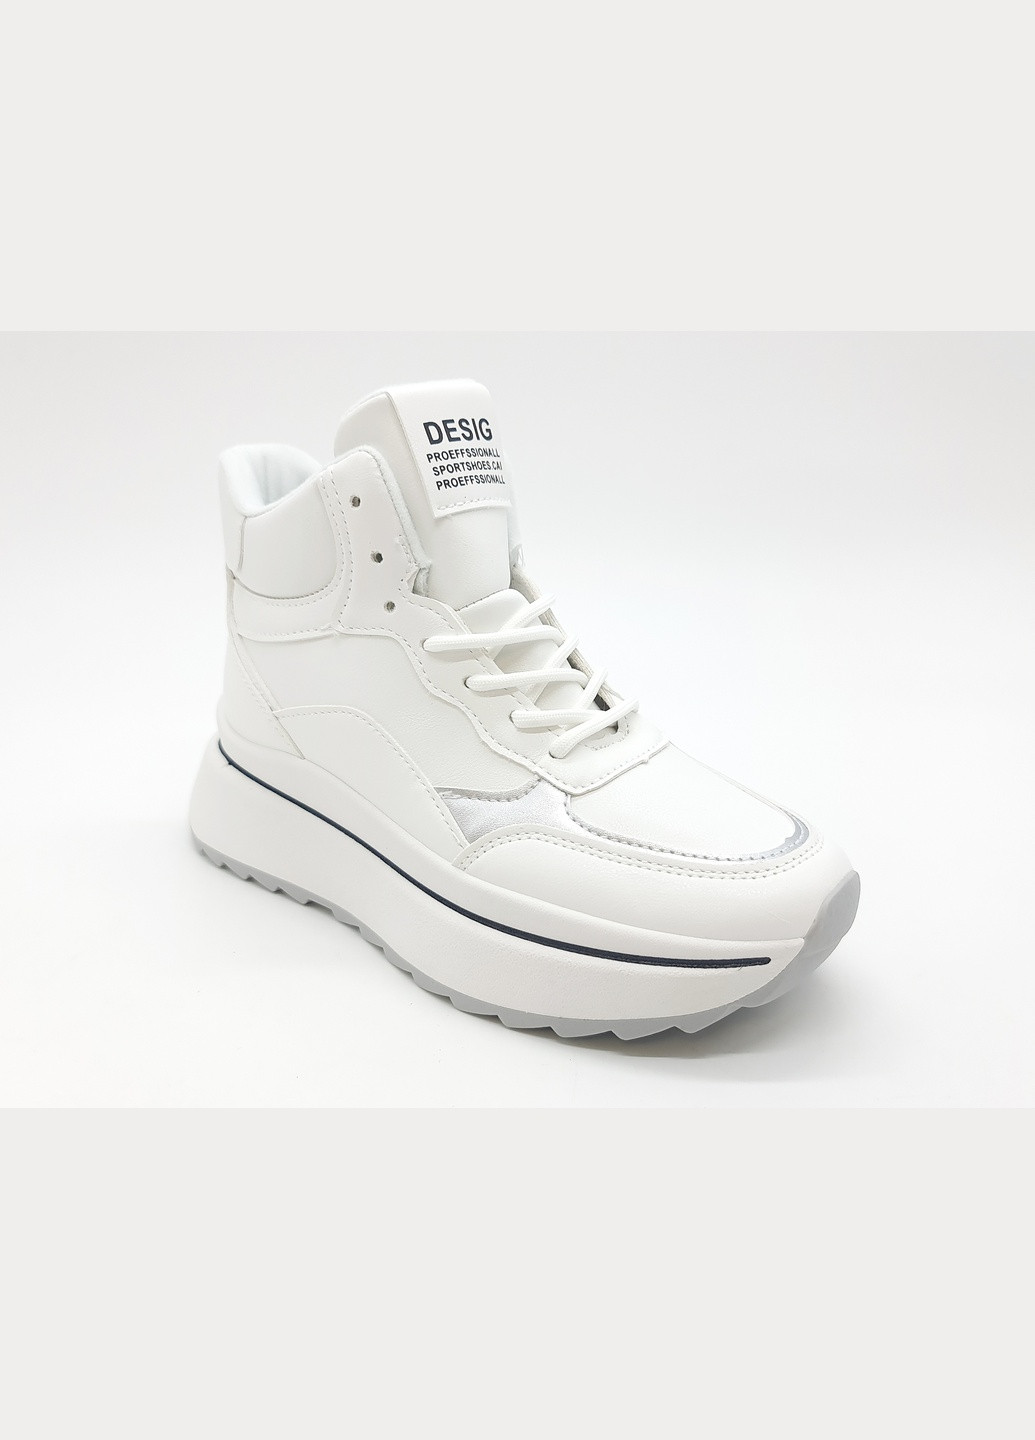 Білі всесезонні жіночі кросівки білі екошкіра ba-18-1 23 см (р) Bashili